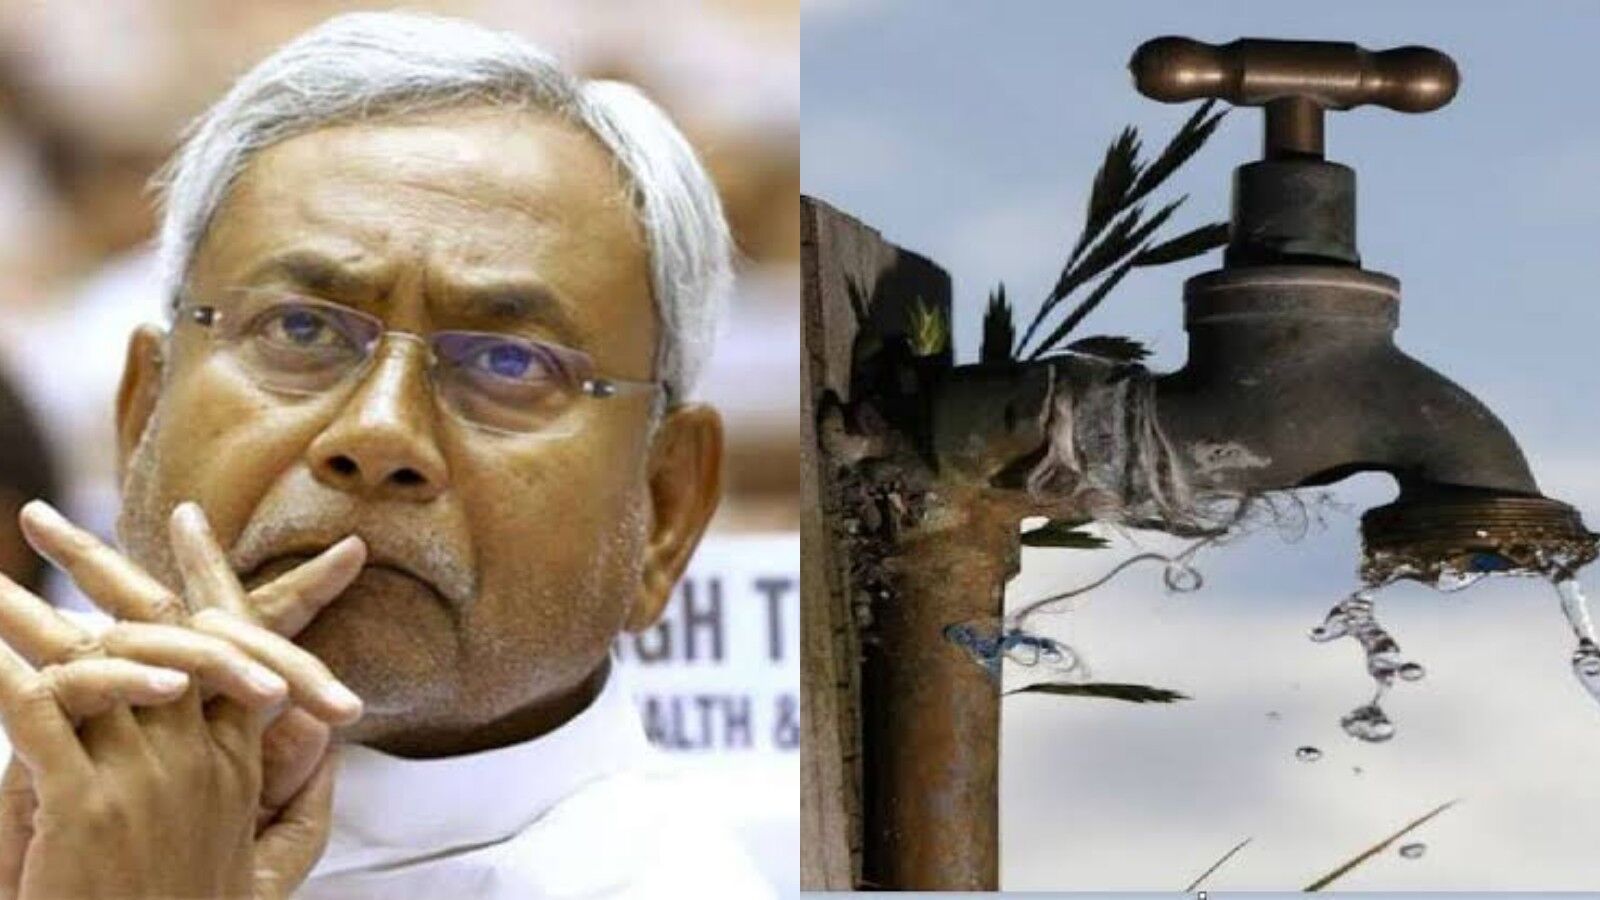 Bihar News: नल जल योजना के तहत डिप्टी CM ही नहीं, JDU नेता के परिवार को भी 80 करोड़ का ठेका, विपक्ष हुआ आक्रामक